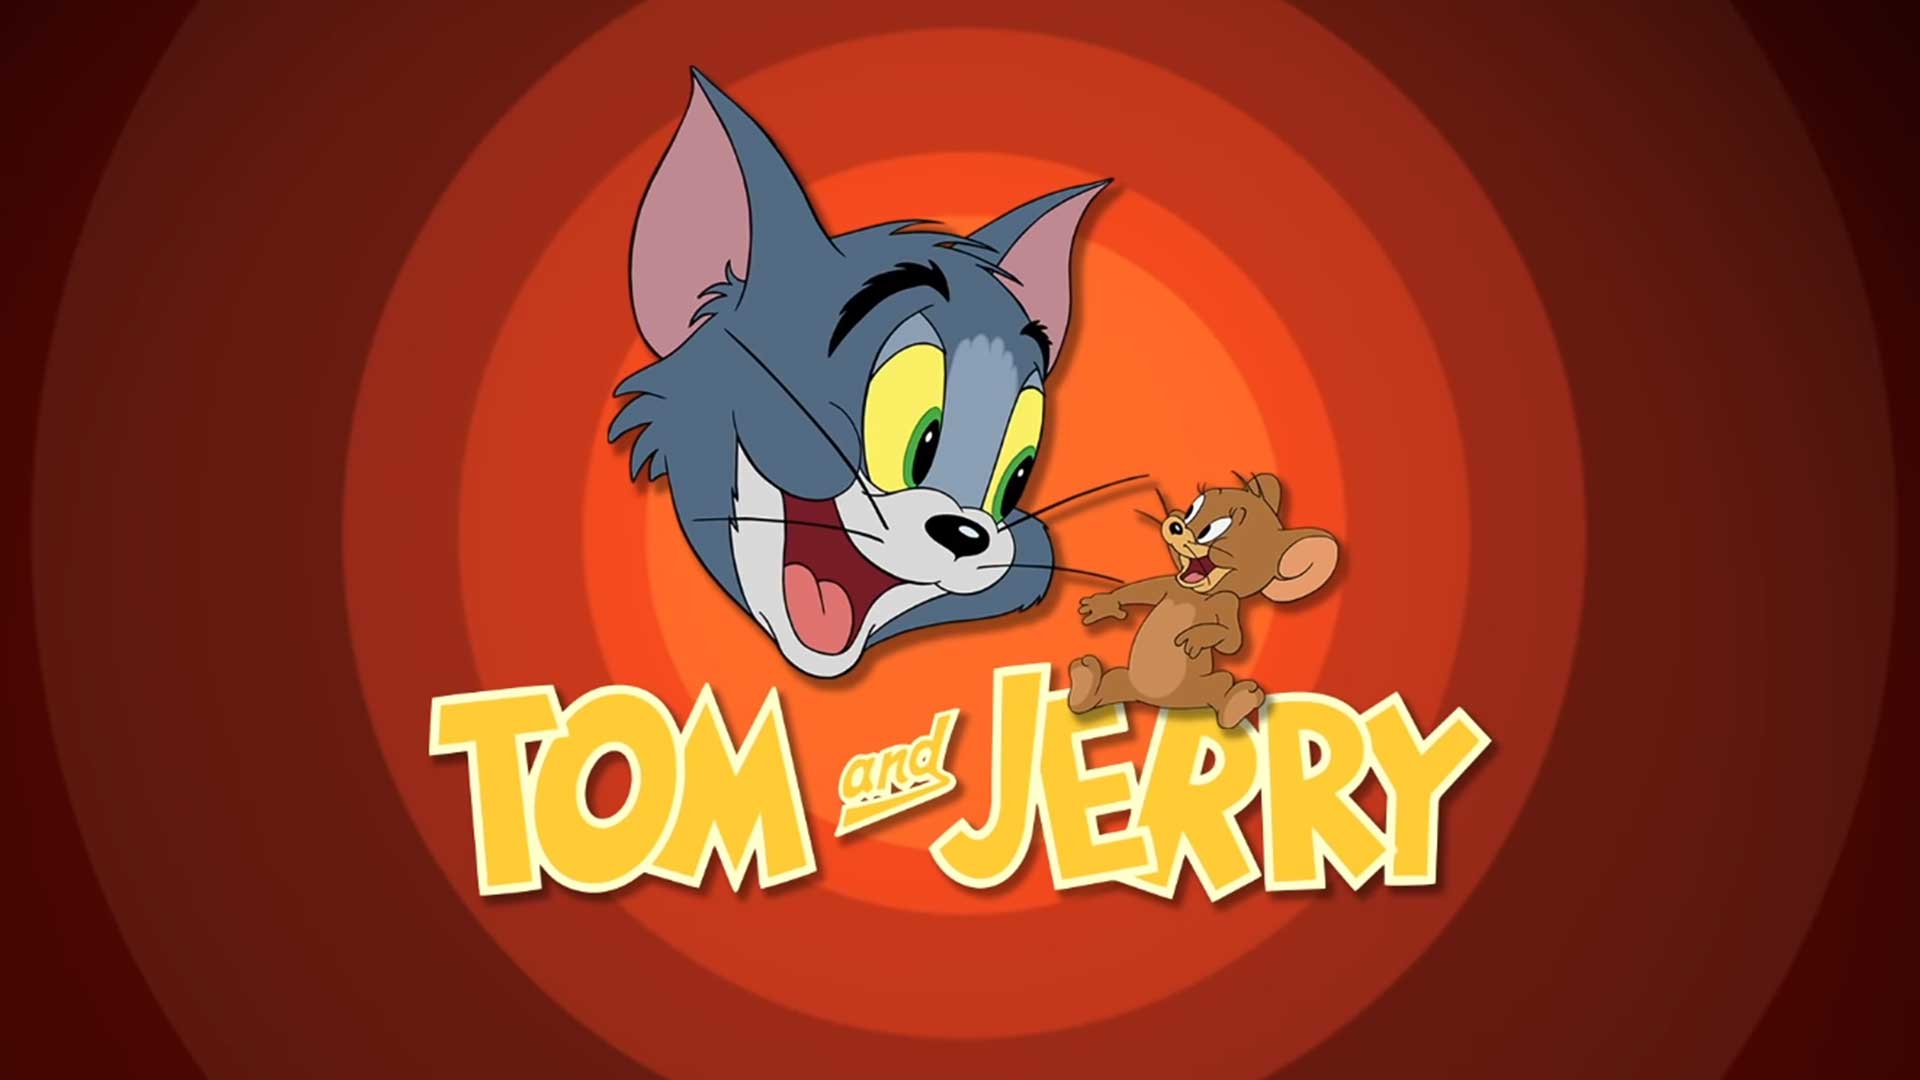 Том и Джерри – 44 серия «Мой любимый щеночек» / Tom and Jerry